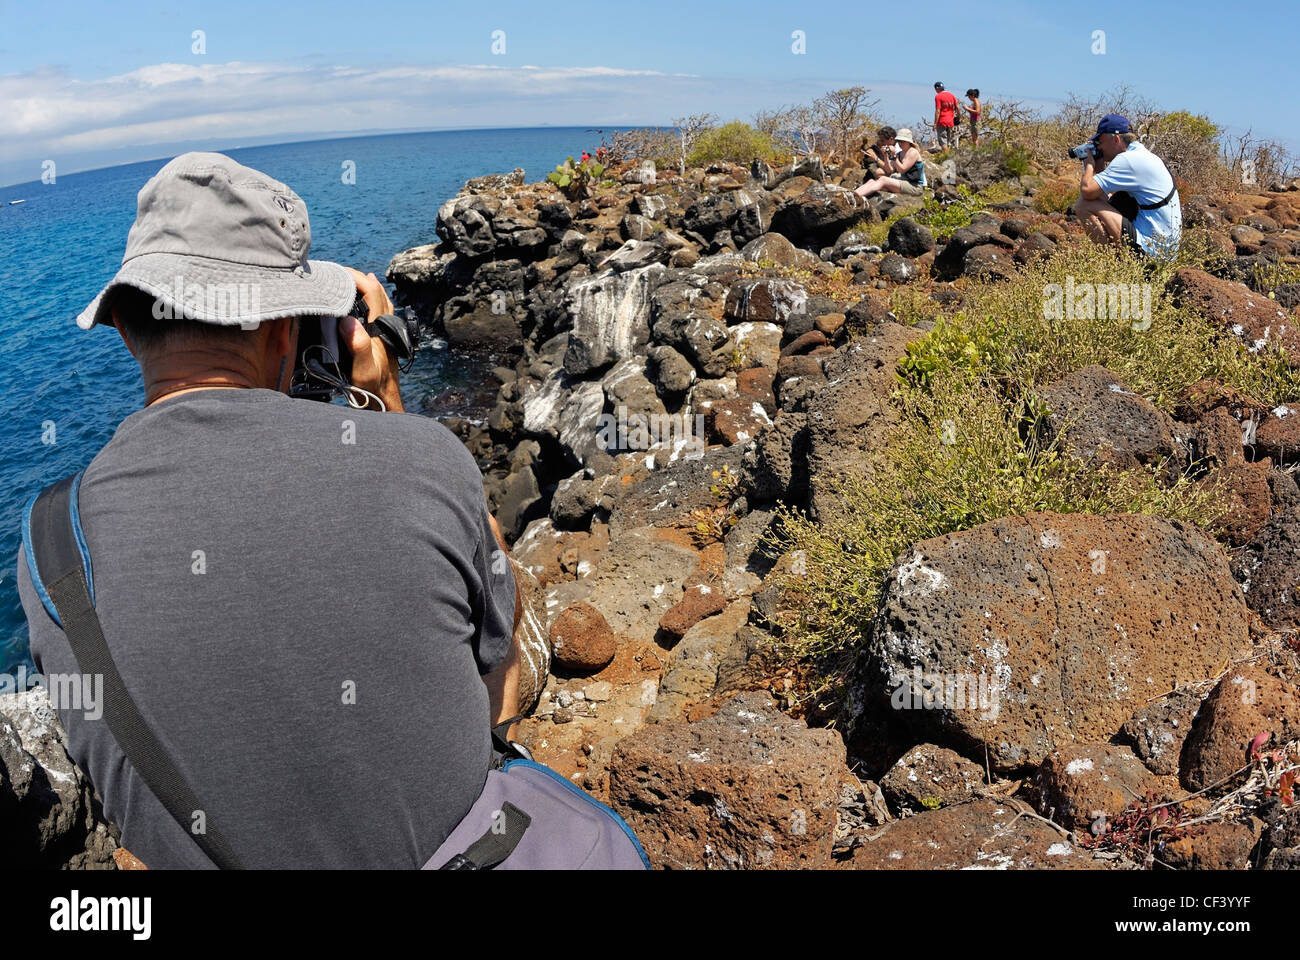 Tournage d'oiseaux, les touristes de l'île Seymour Nord, îles Galapagos, Equateur Banque D'Images